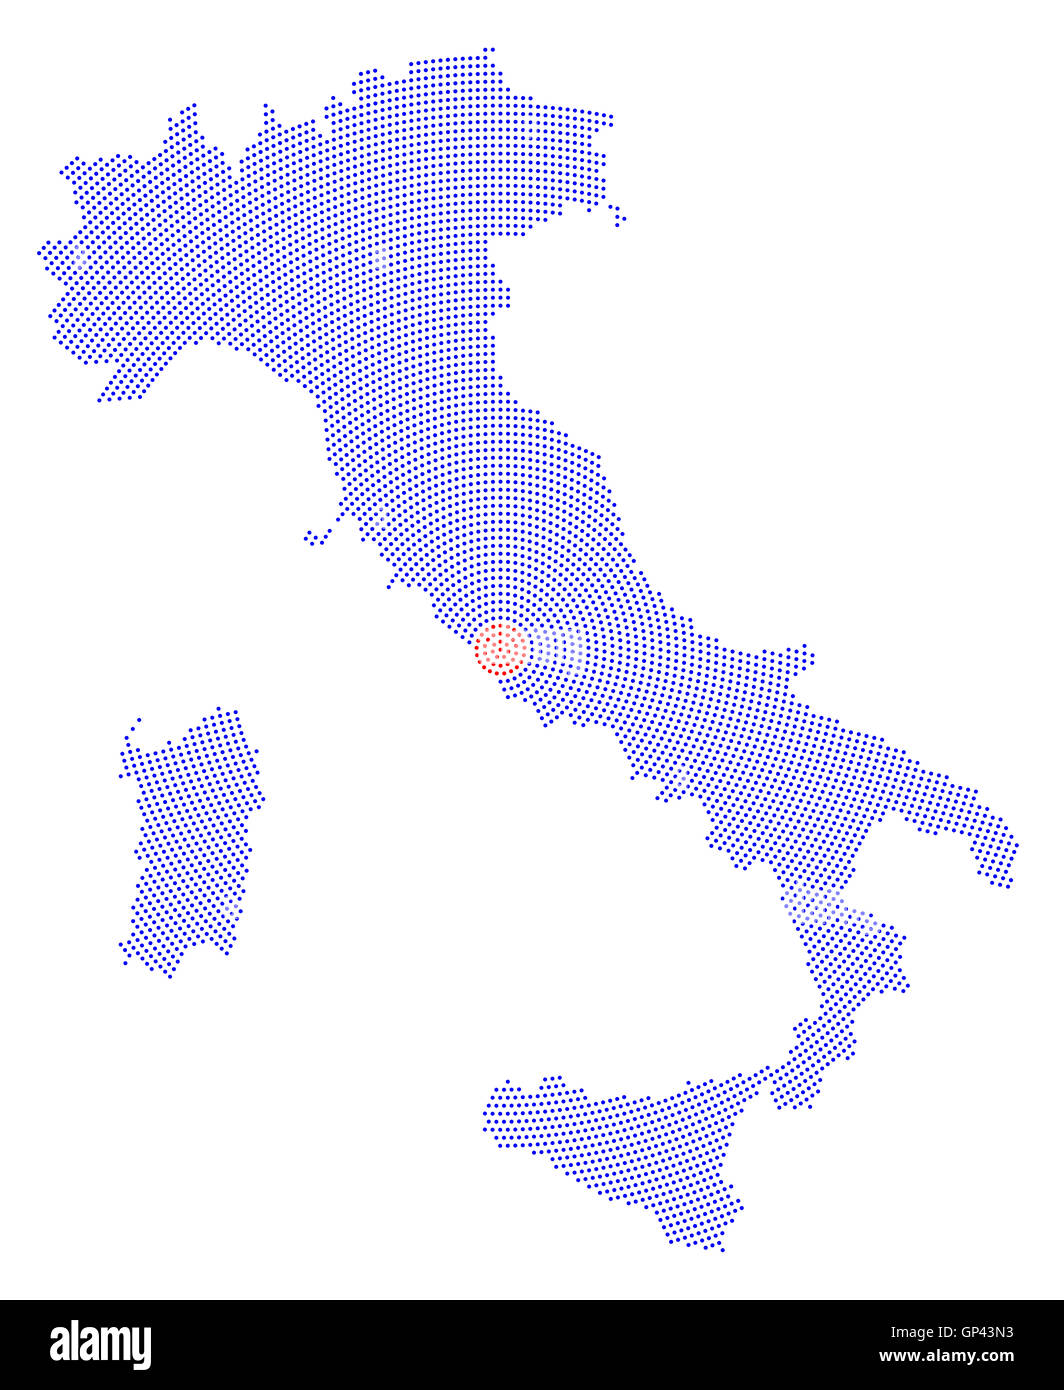 Italien Karte radial Punktmuster. Blaue Punkte gehen von der Hauptstadt Rom nach außen und bilden die Boot-Silhouette des Landes. Stockfoto